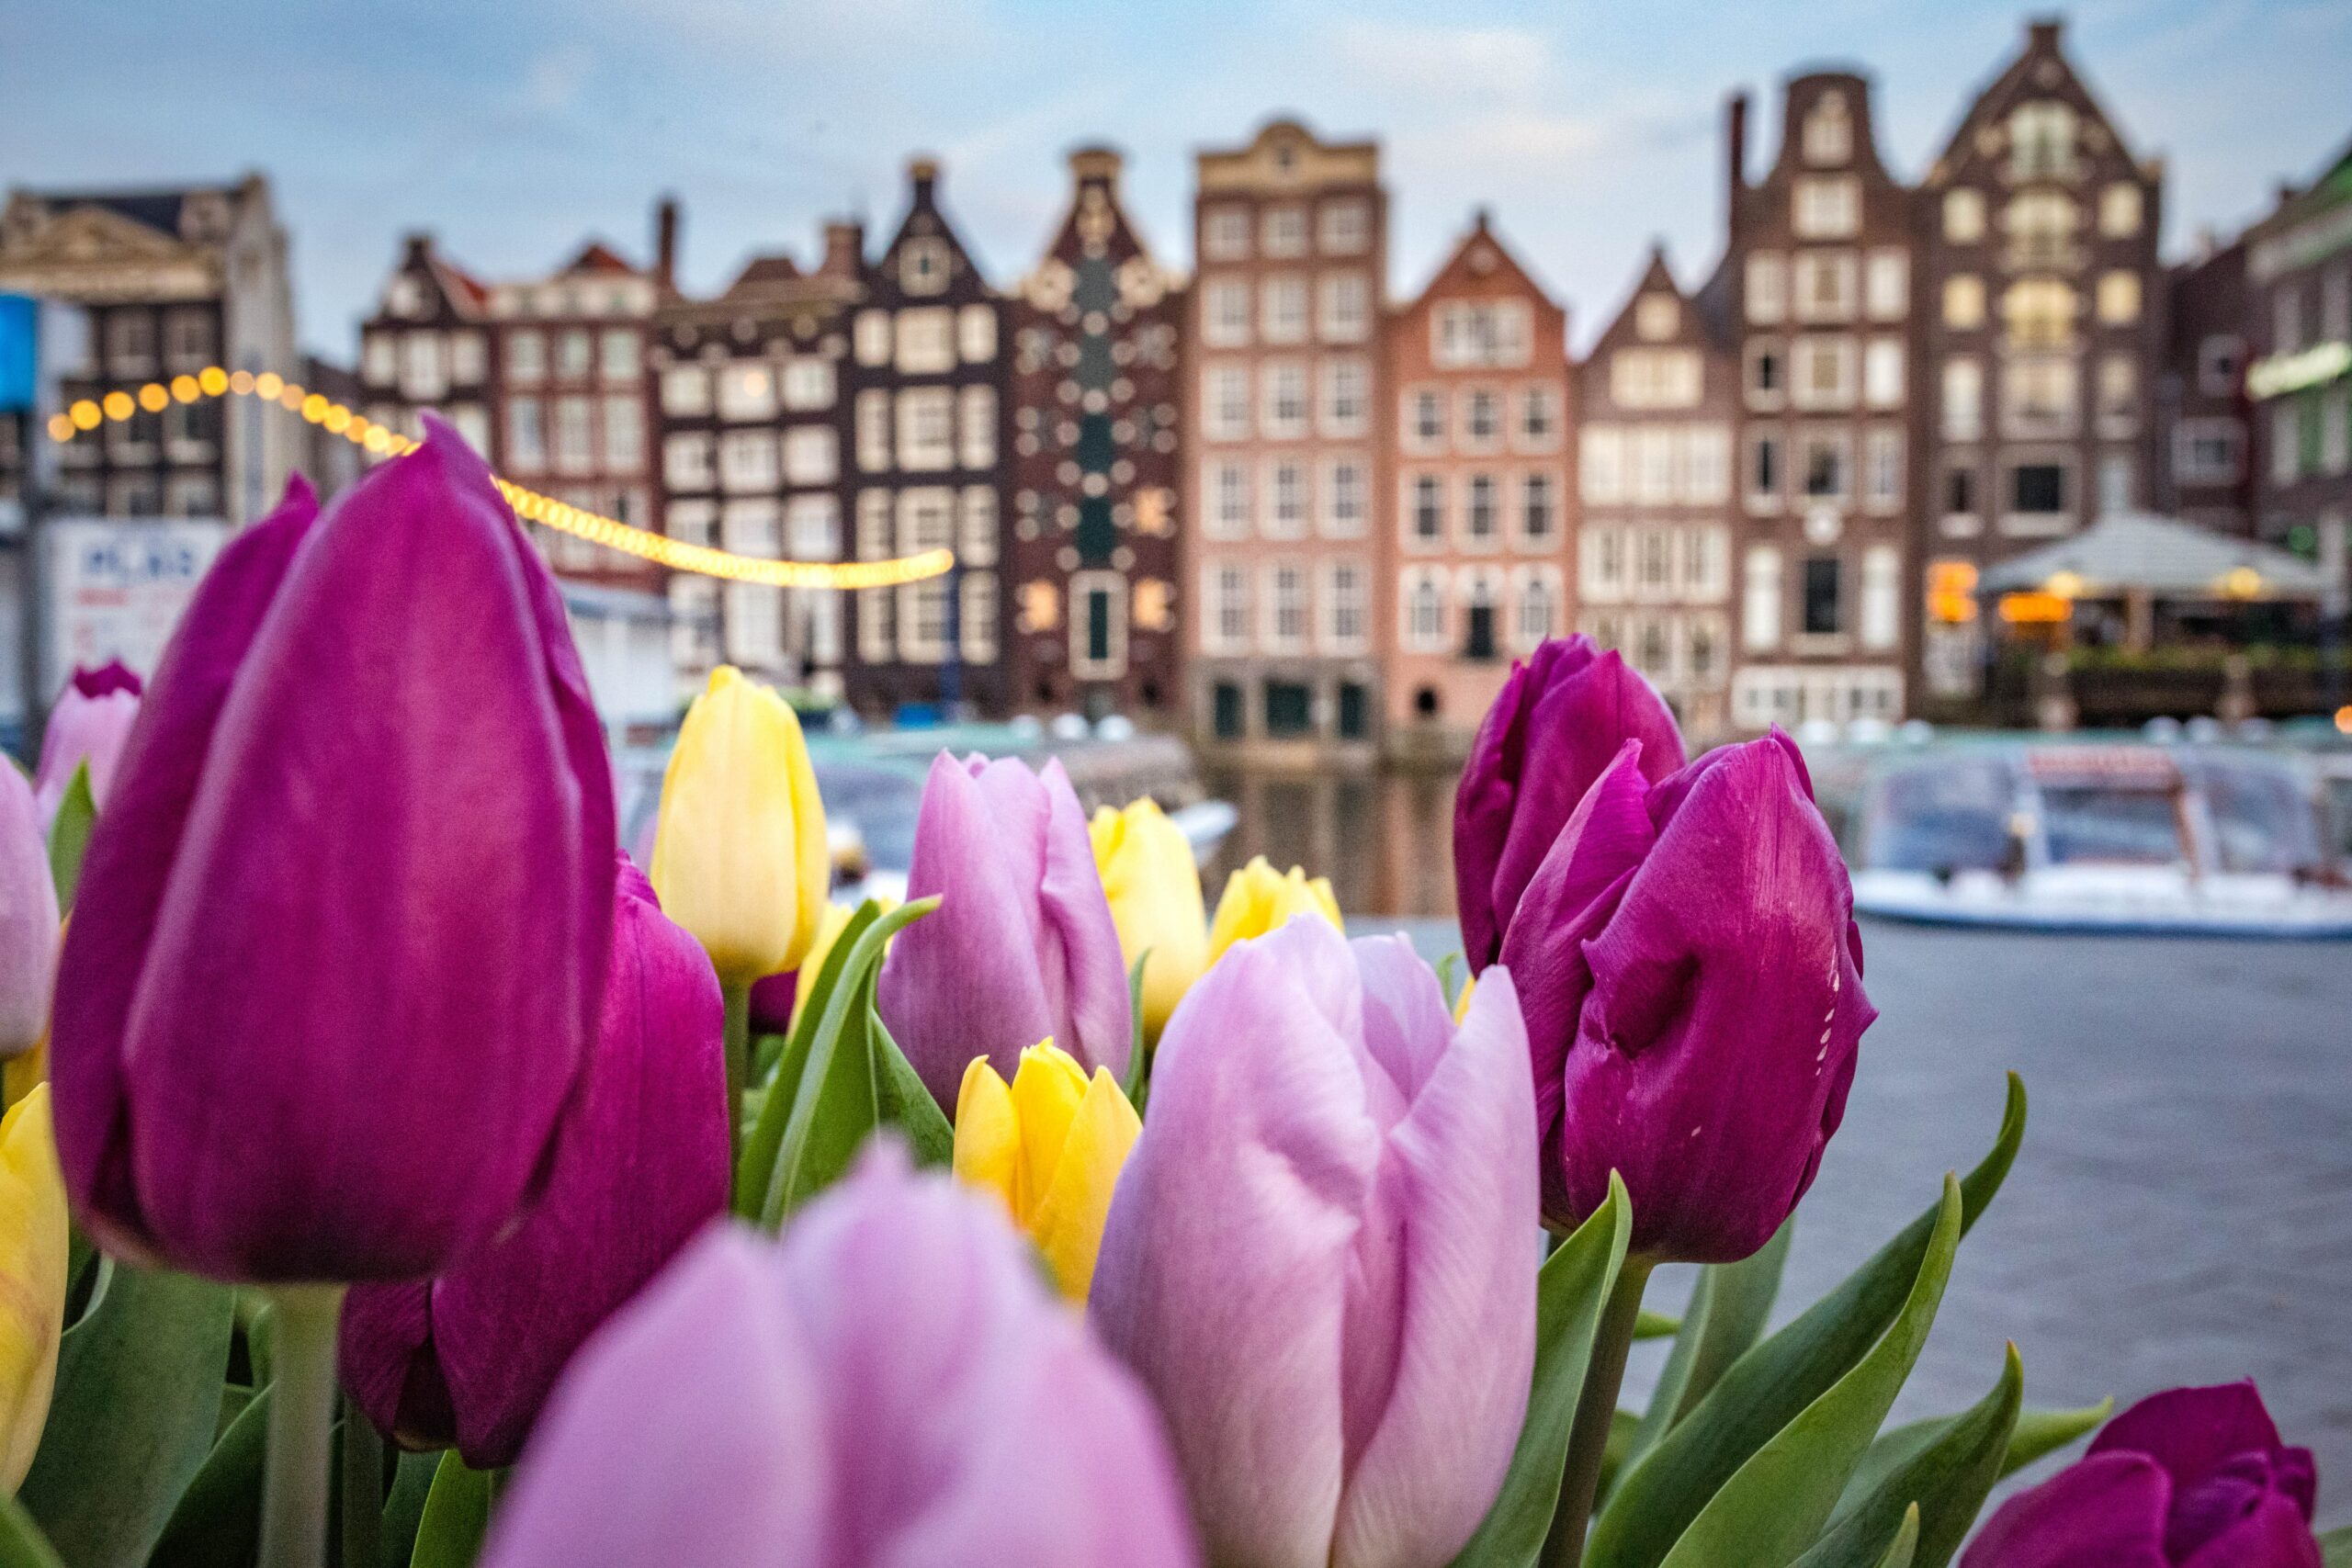 Tulipas rosas, roxas e amarelas e ao fundo edifícios em estilo enxaimel. Representa seguro viagem para Amsterdam.